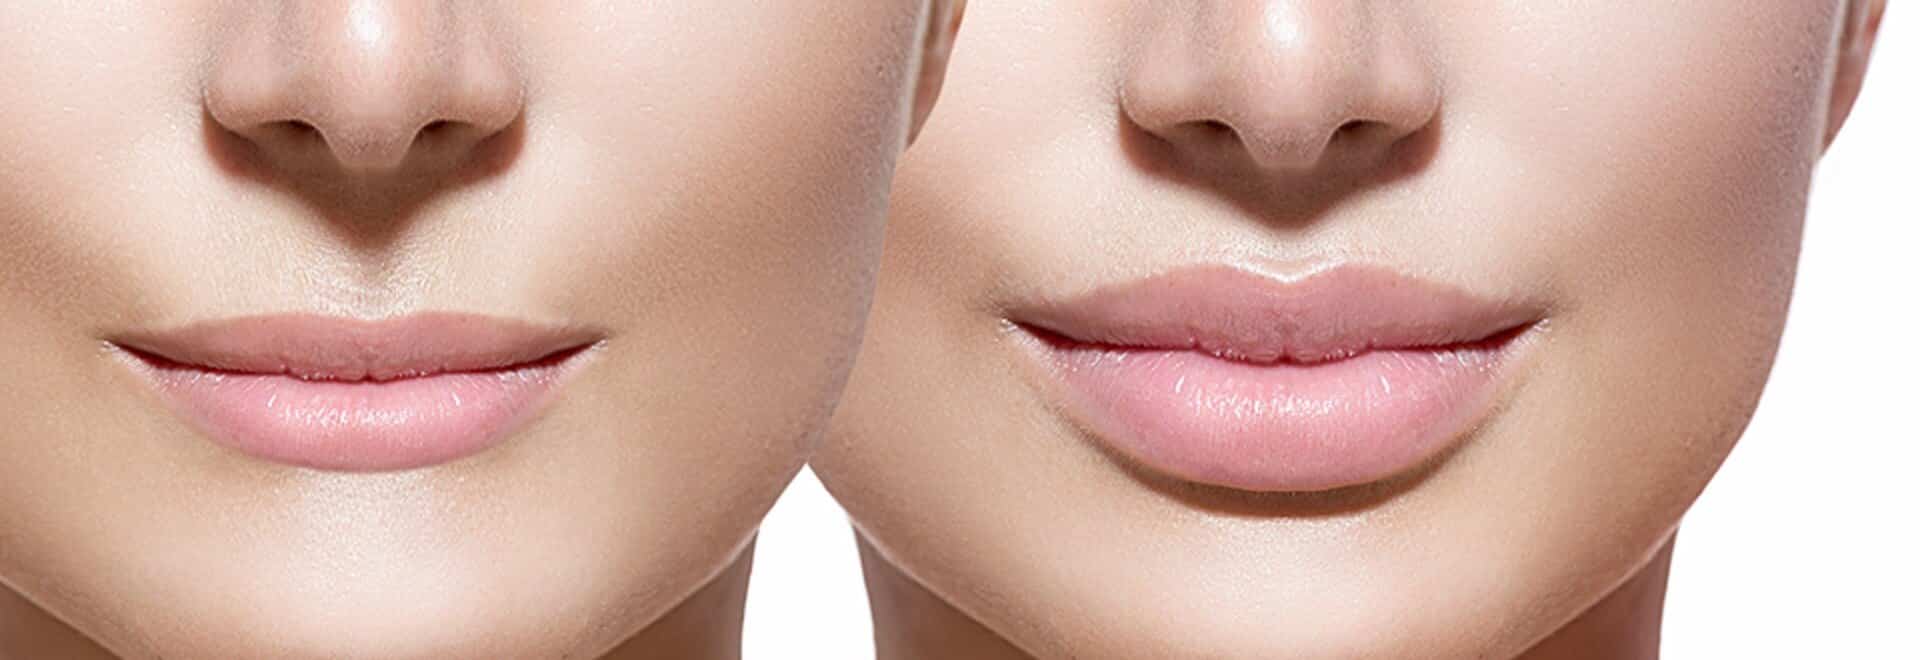 Масаж після збільшення губ - як правильно розминати губи